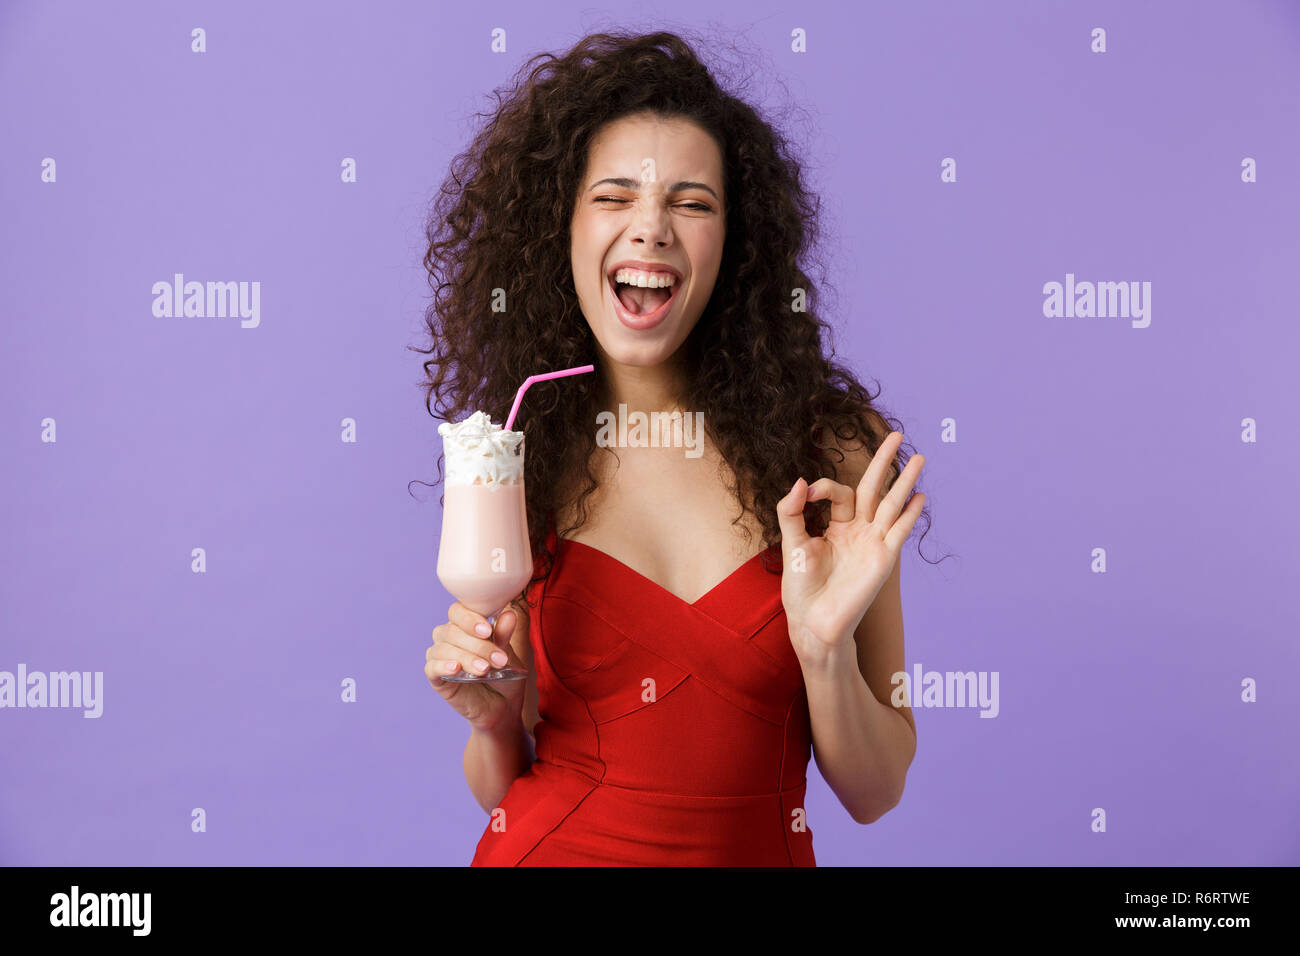 Portrait von freut sich Frau mit dunklen lockigen Haar rotes Kleid über violett Hintergrund isoliert, trinken Milch shake aus einem Glas, ok angezeigt Stockfoto